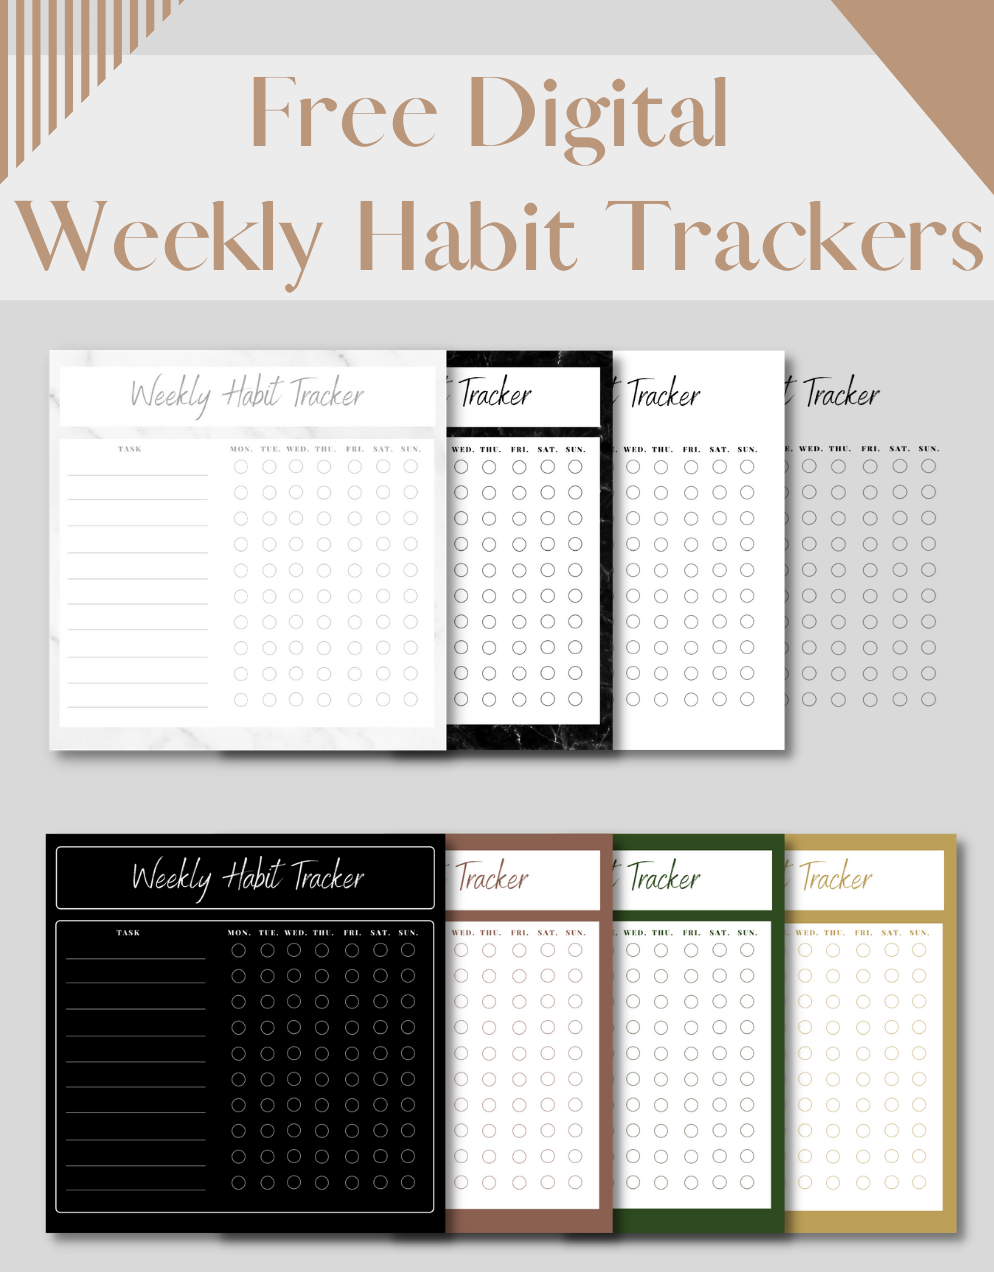 Free Digital Weekly Habit Trackers